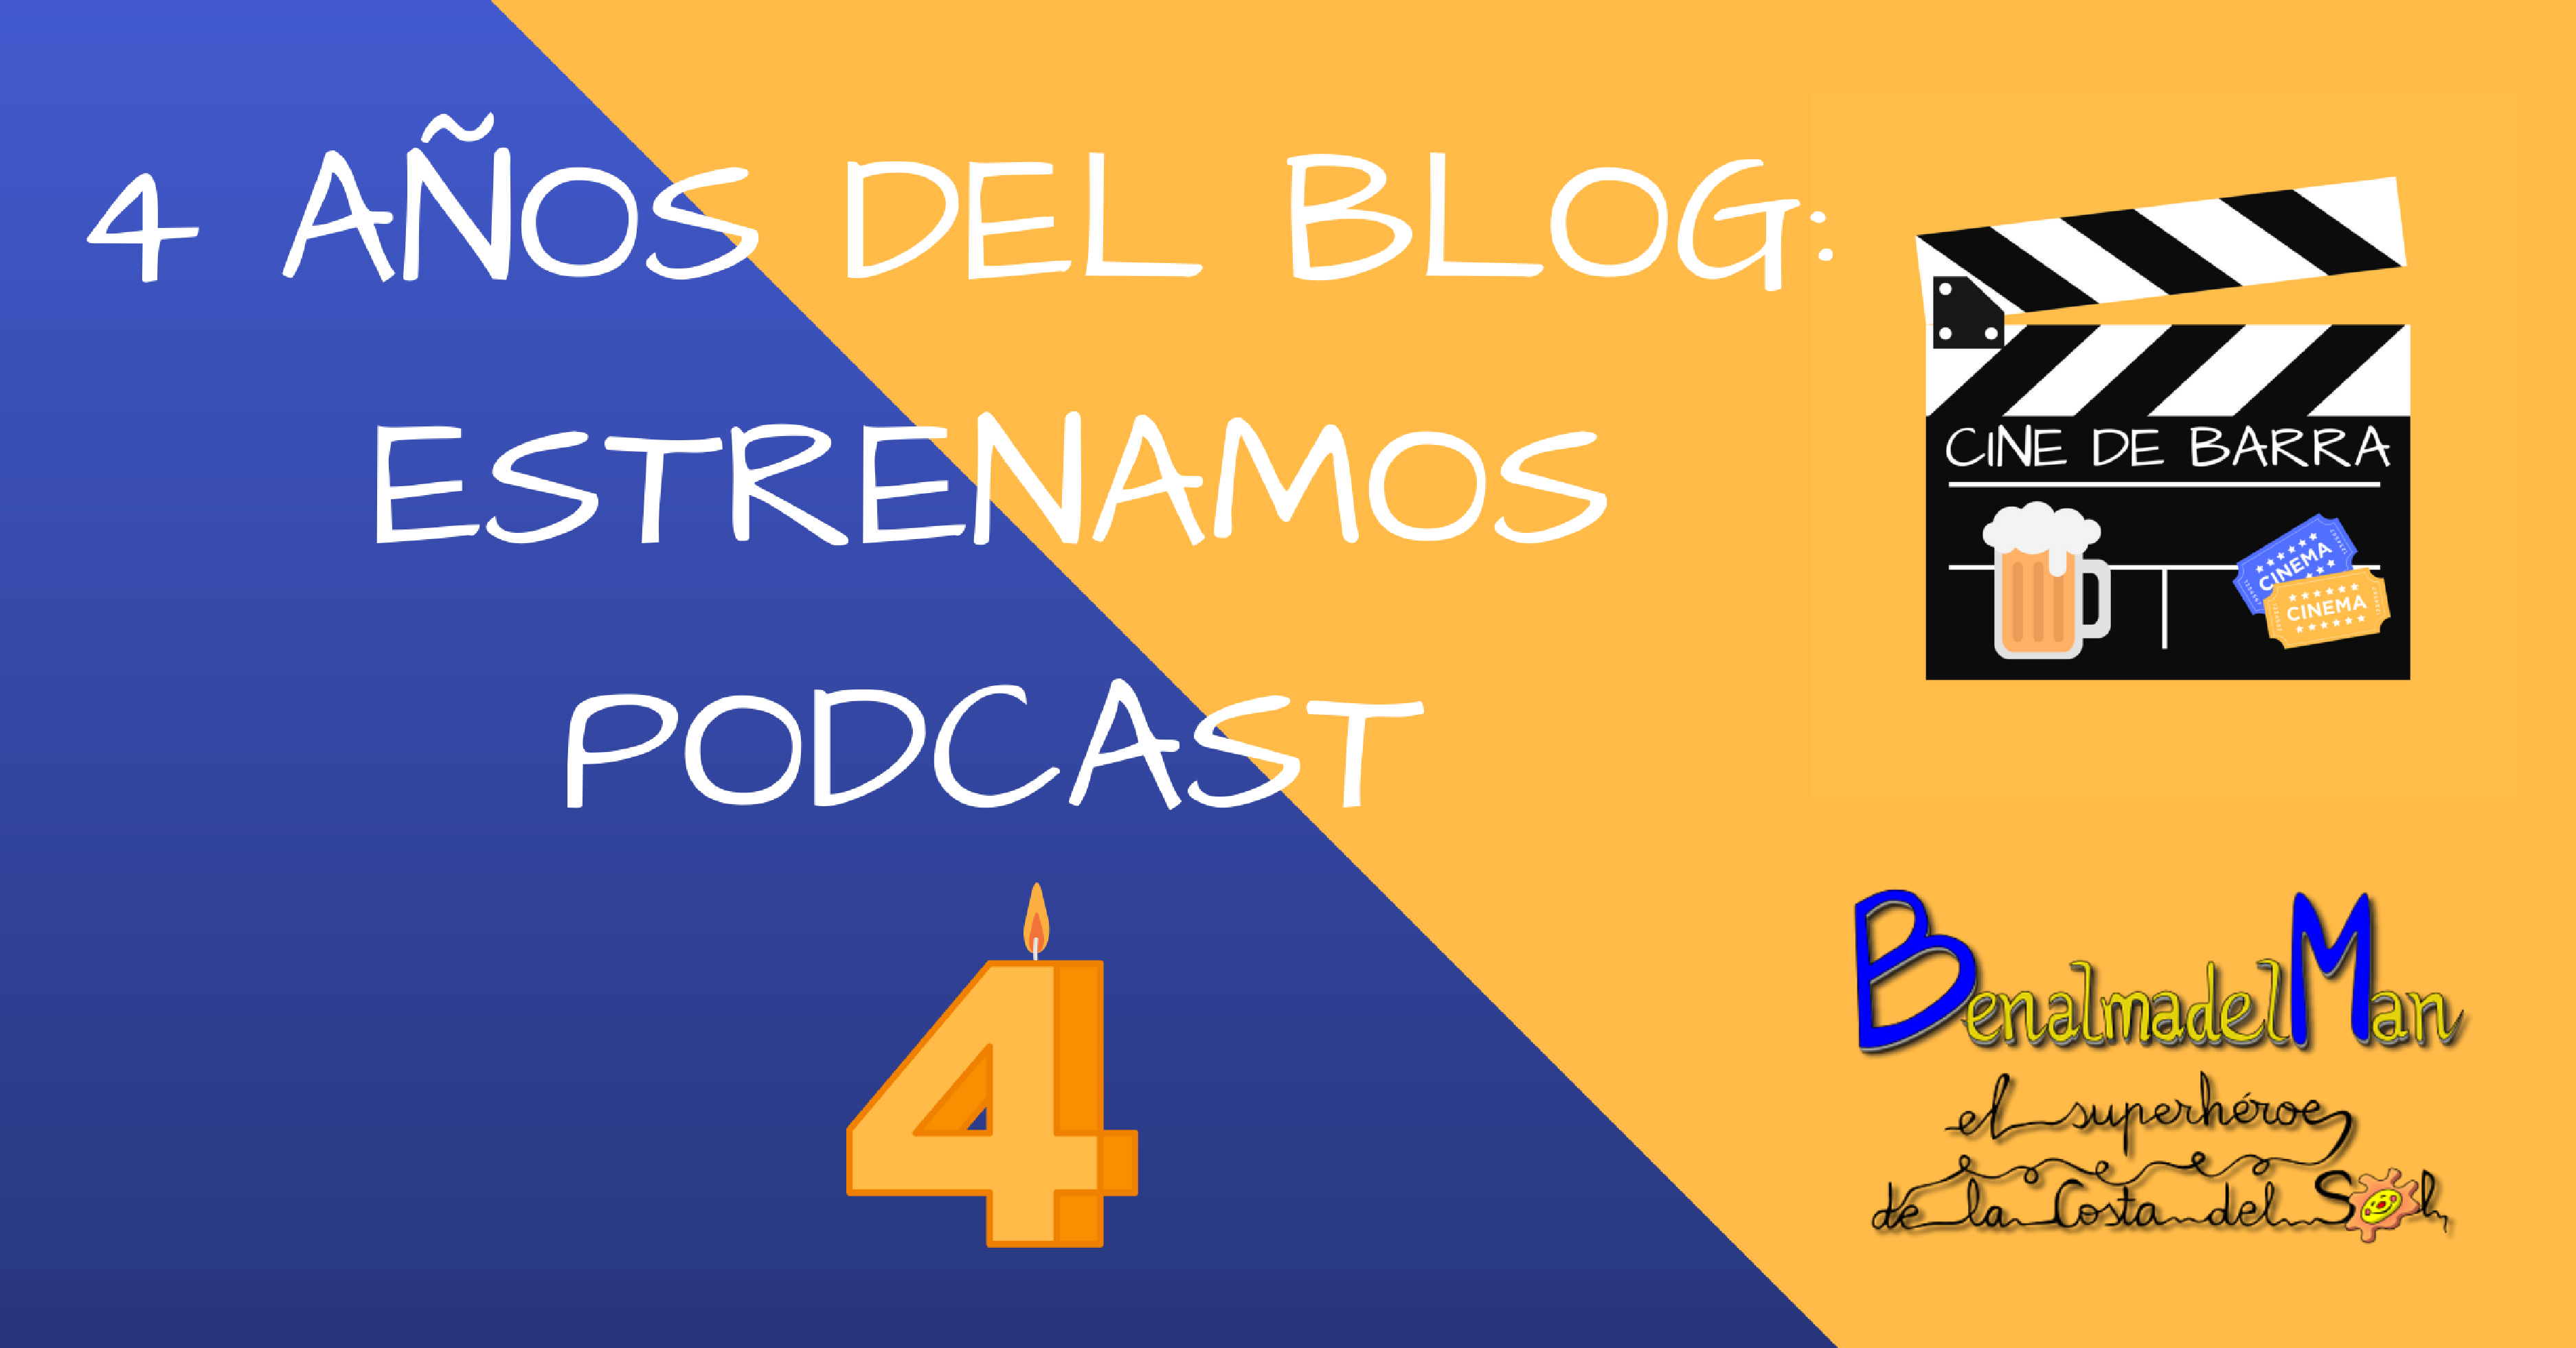 4 años de Benalmadelman y estrenamos podcast: Cine de Barra y Matthew Vaughn